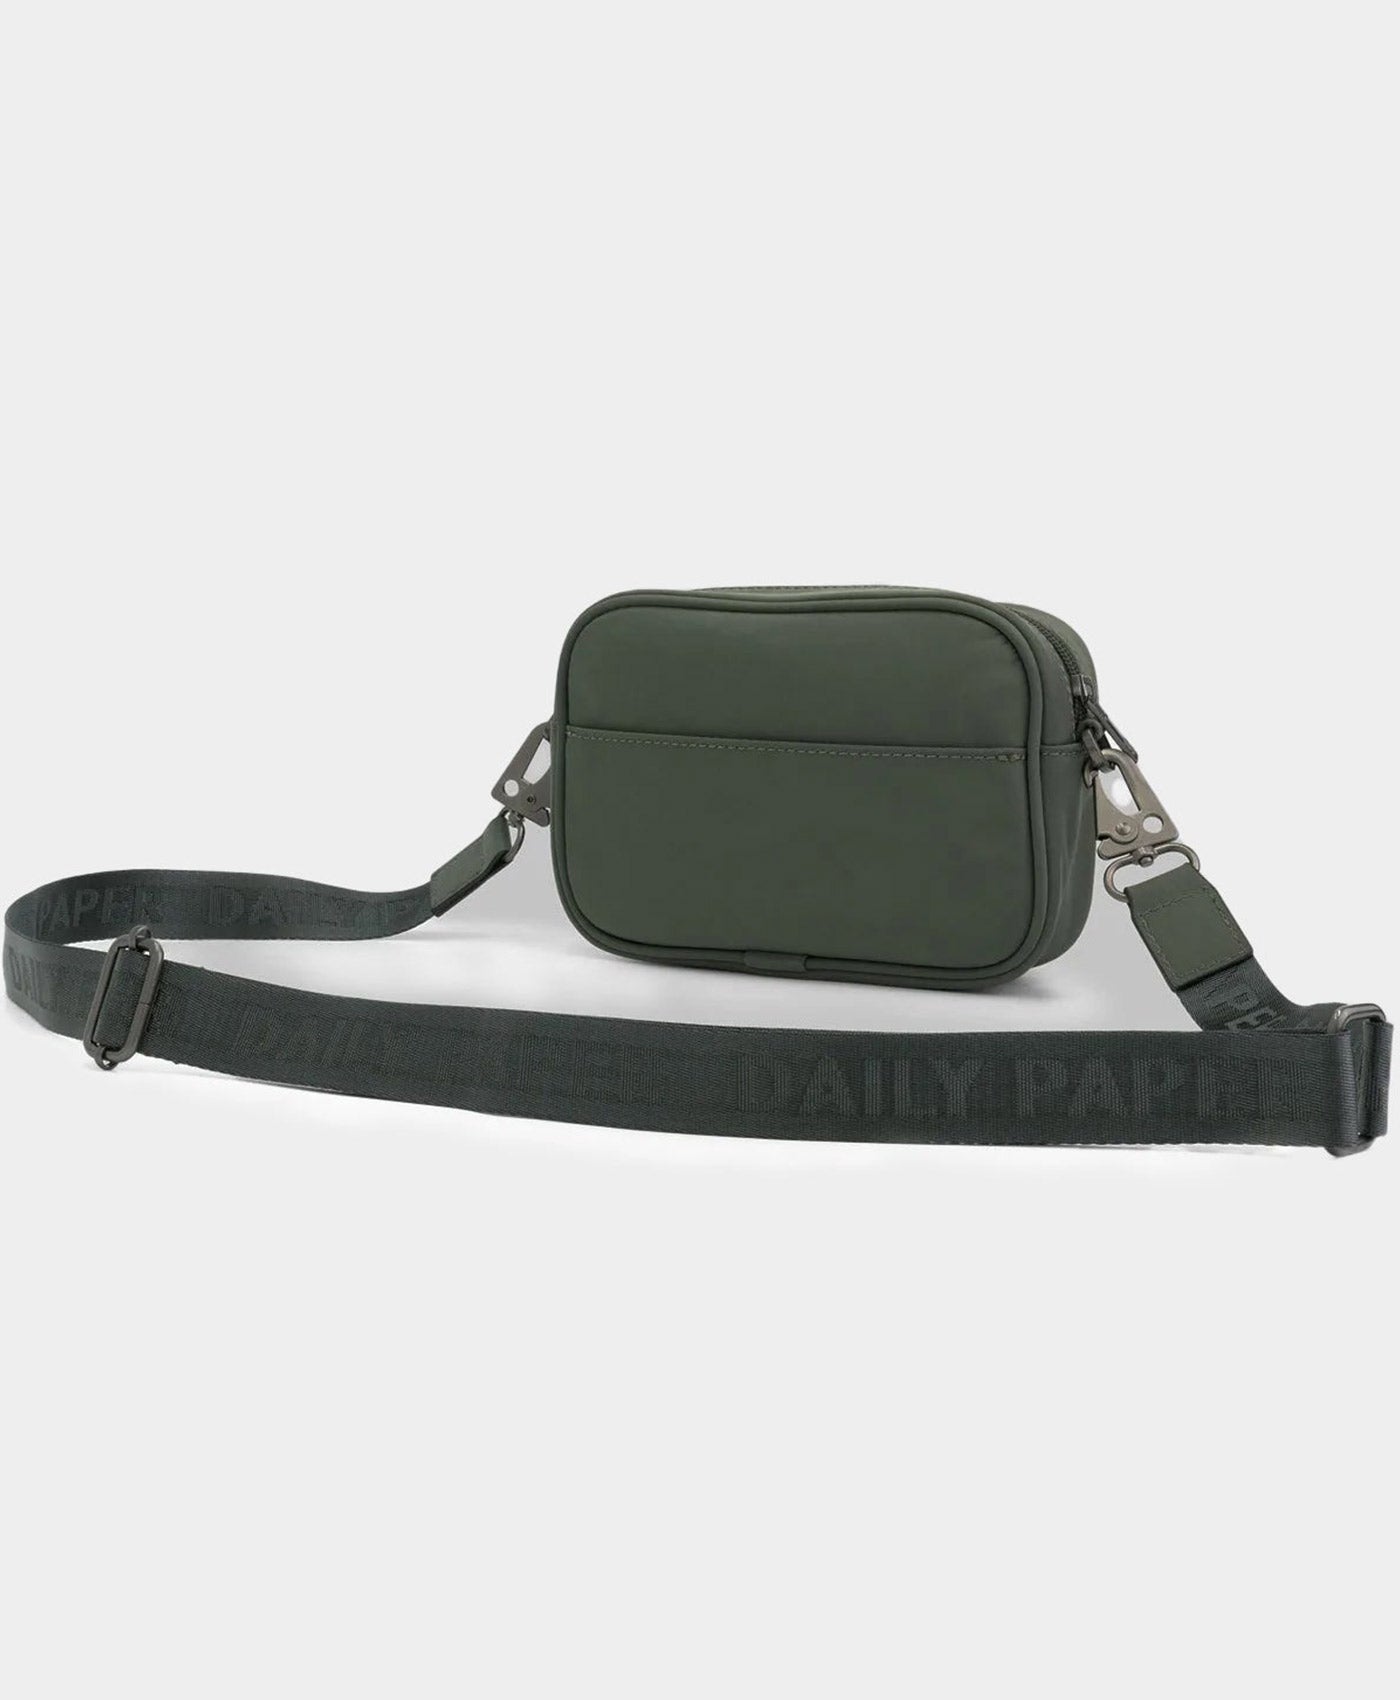 DP - Chic Green Namea Bag - Packshot - Rear